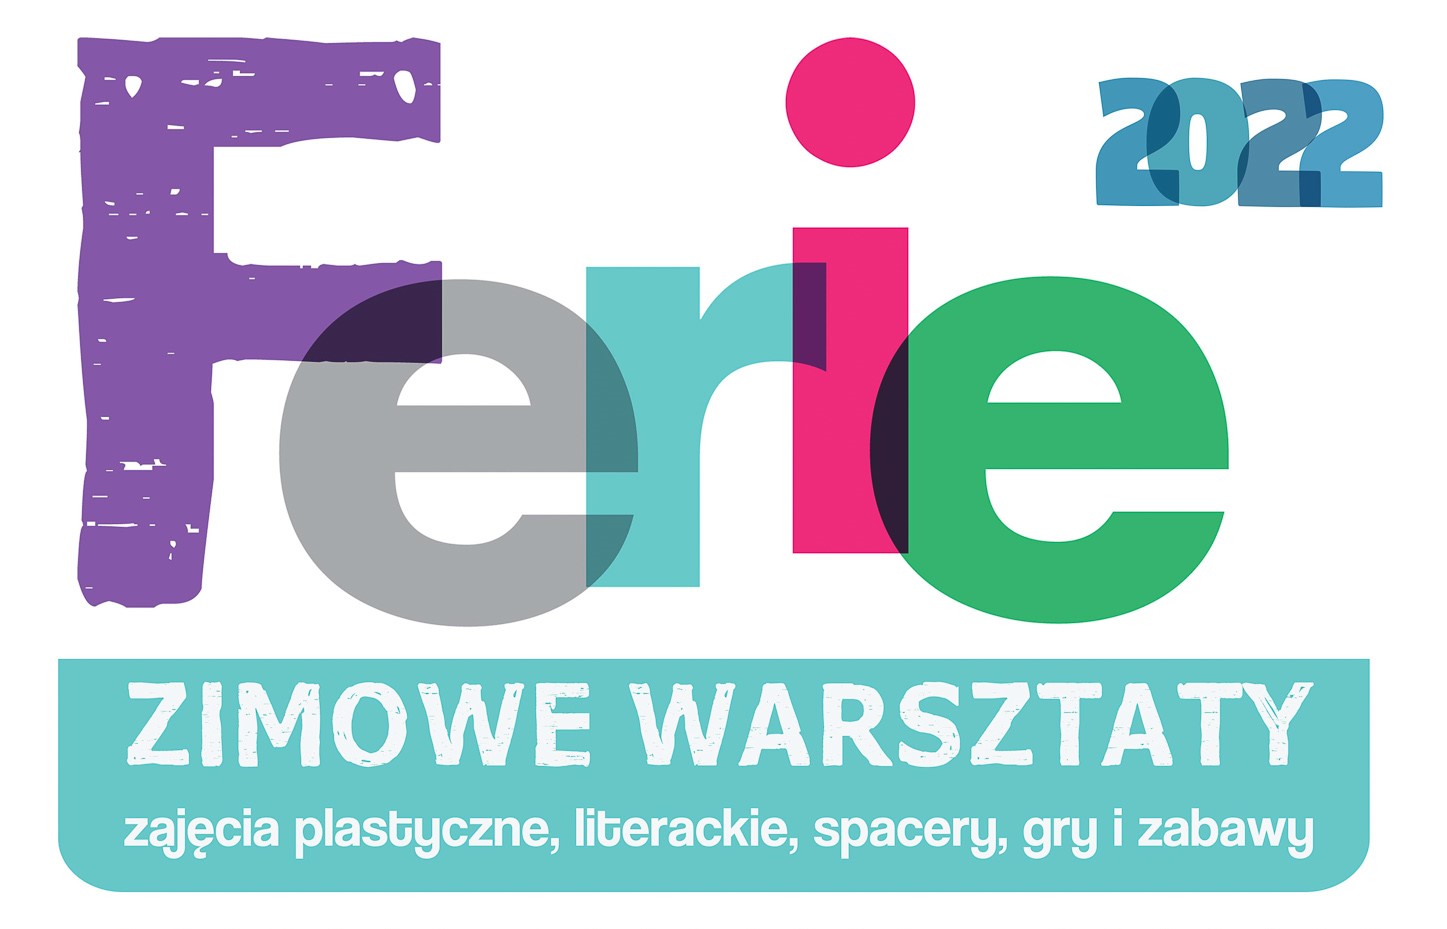 Ferie 2022 Kazimierz Dolny warsztaty